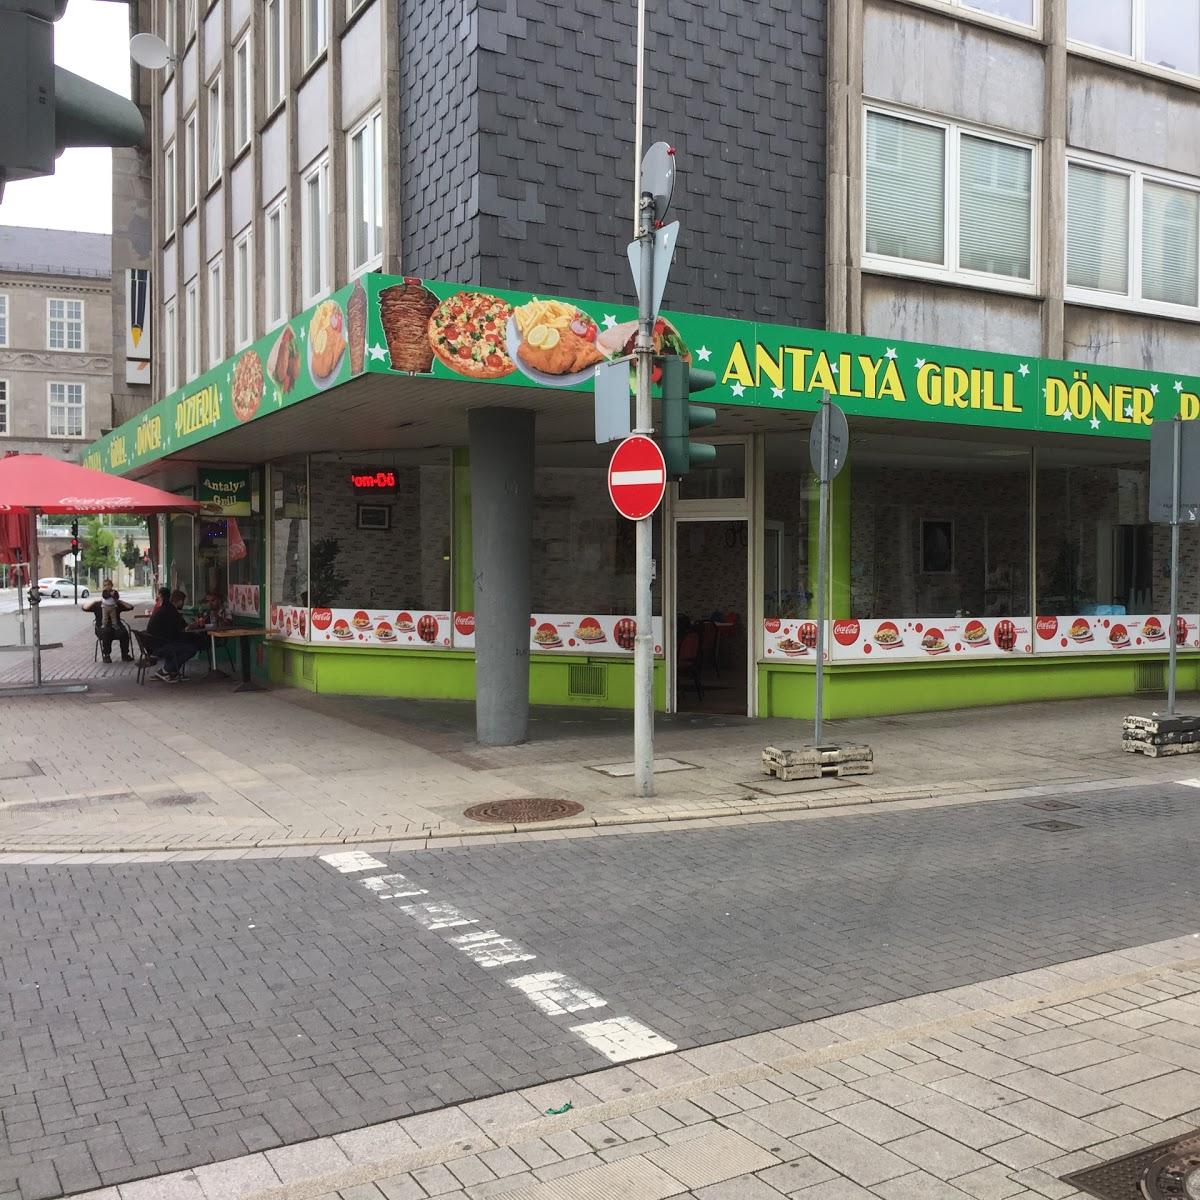 Restaurant "Antalya Grill" in Mülheim an der Ruhr